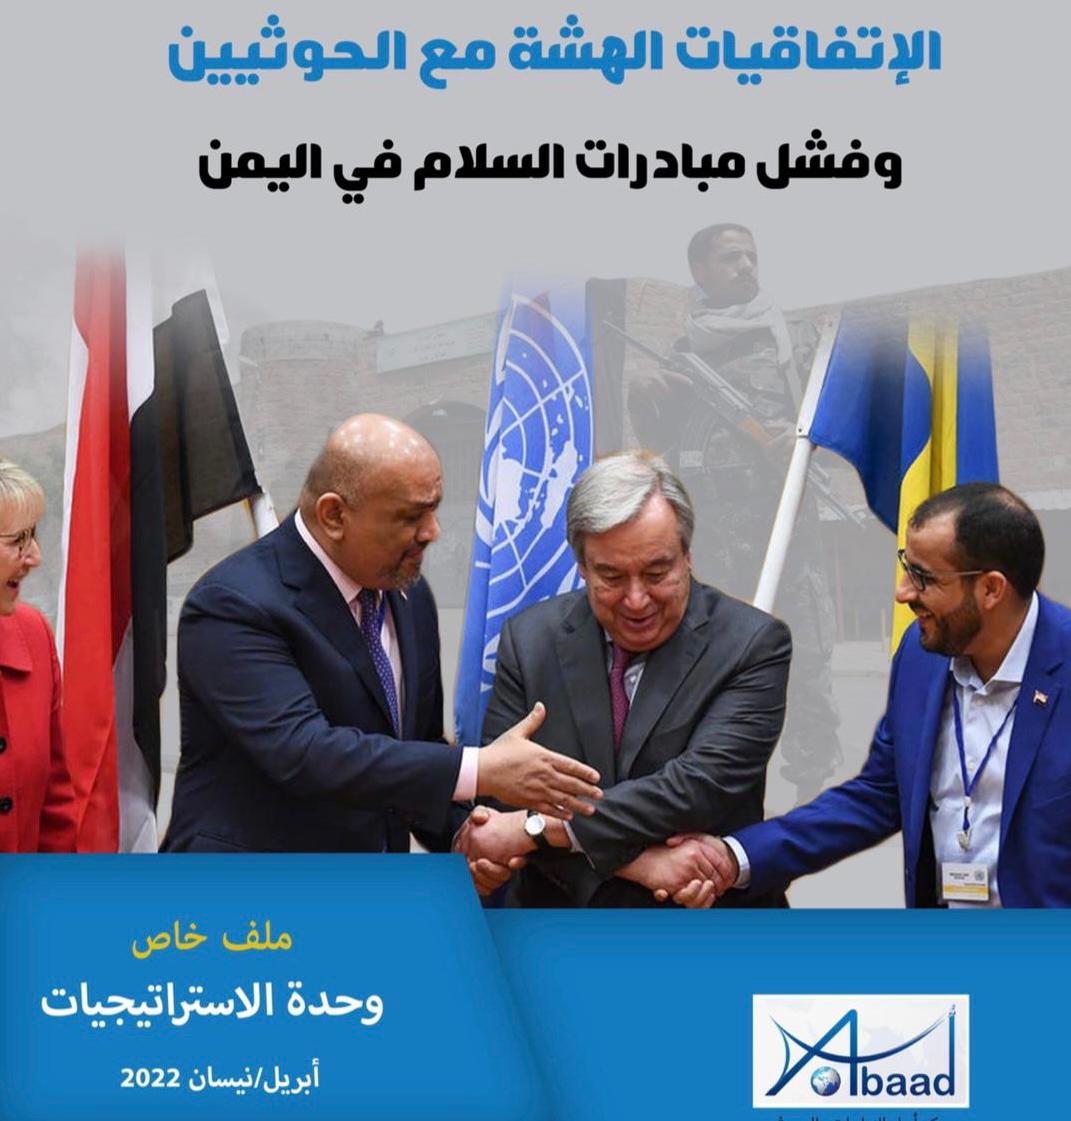  الاتفاقيات الهشة مع الحوثيين وفشل مبادرات السلام في اليمن